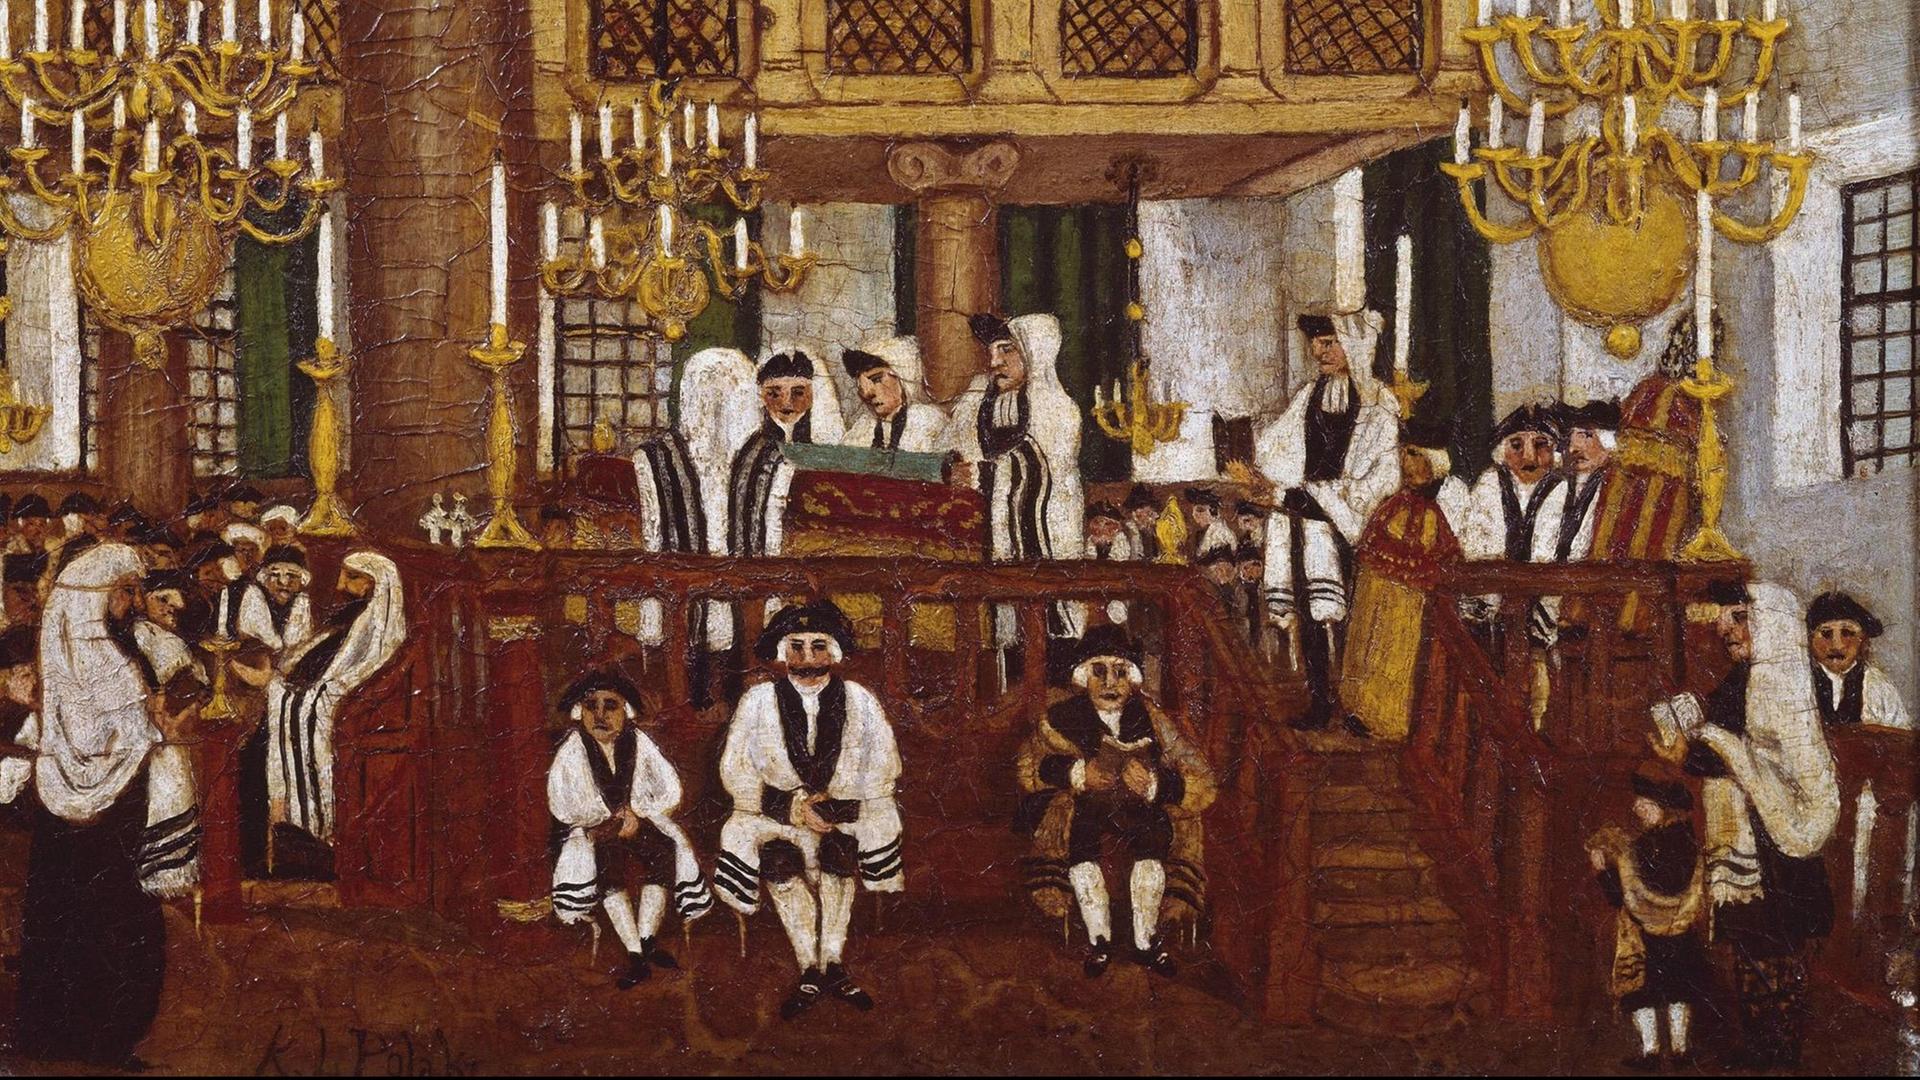 Das Ölgemälde von K. L. Polack zeigt eine Zeremonie mit etlichen traditionell schwarz-weiß gekleideten Menschen in einer Synagoge, in der schwere Kerzenleuchter hängen.